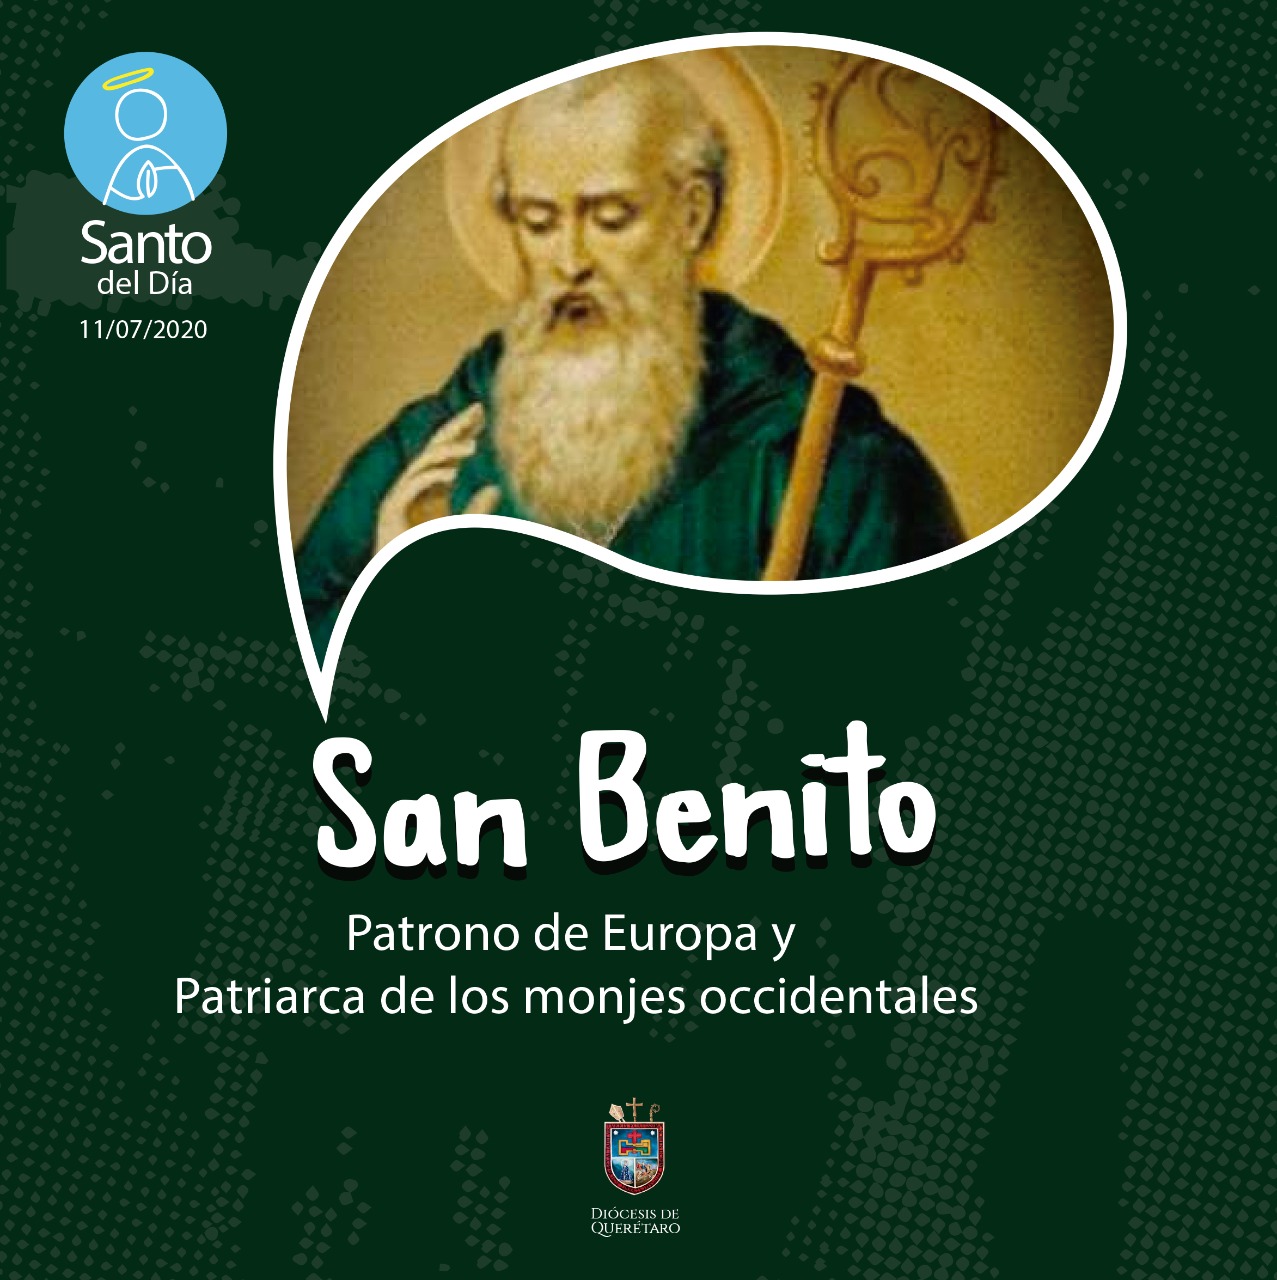 Arquidiócesis Primada de México on X: San Benito, ruega por nosotros. En  este día, celebramos a San Benito Abad, patrono de Europa, fundador de la  Orden de los Benedictinos y un santo